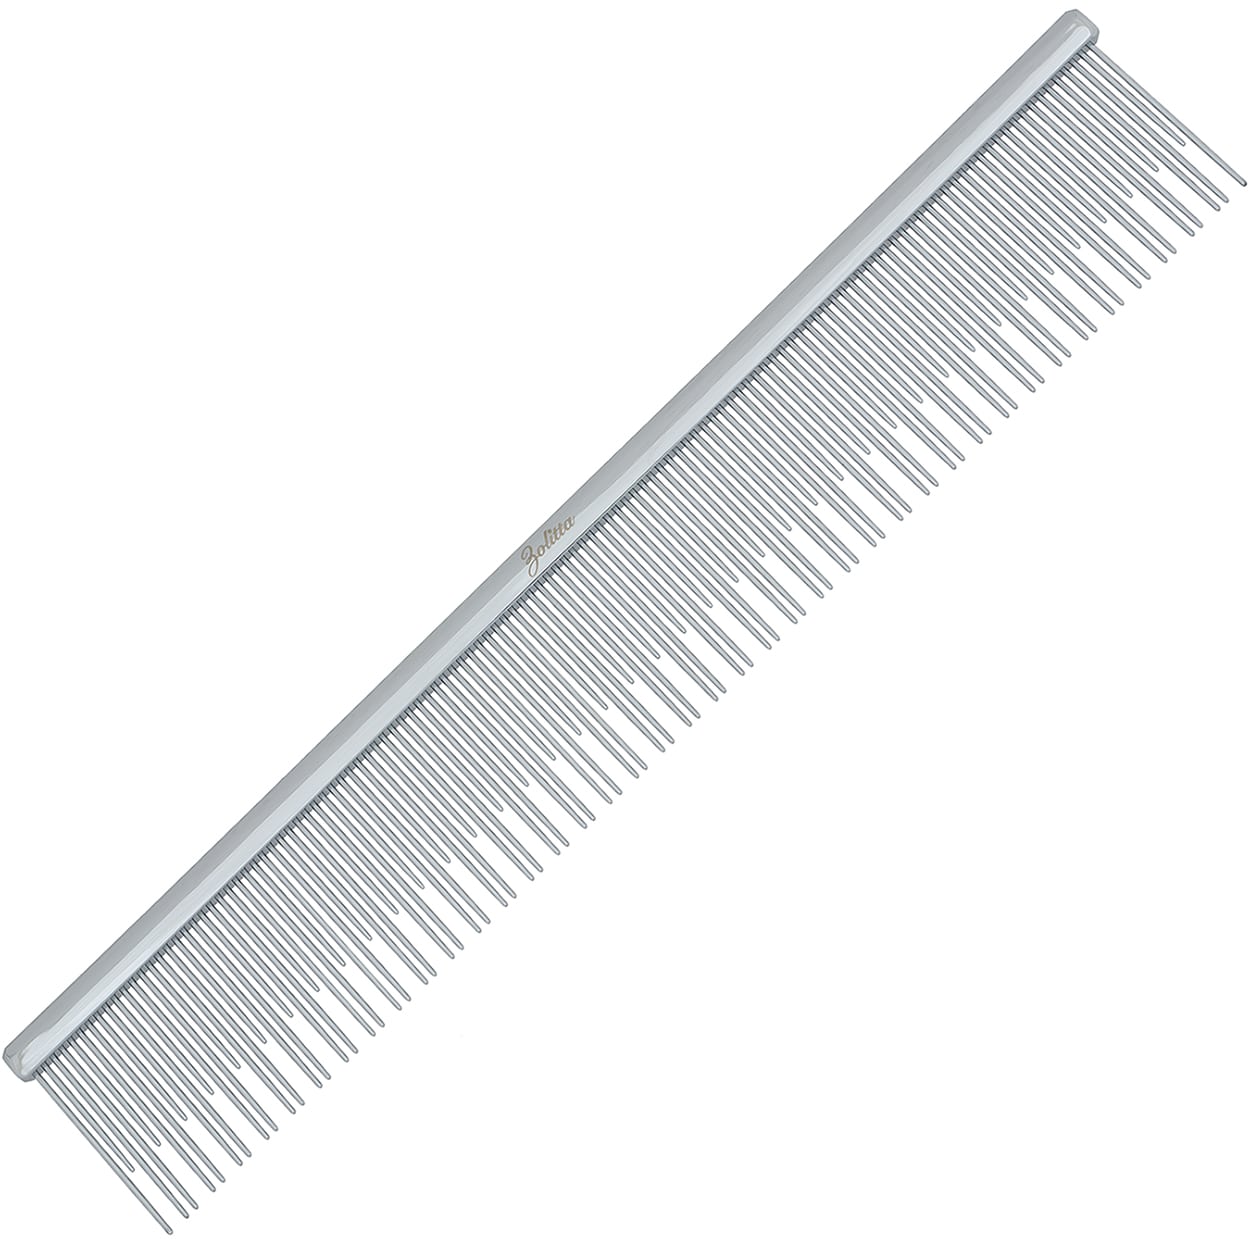 Zolitta Silver Comb 9 inch